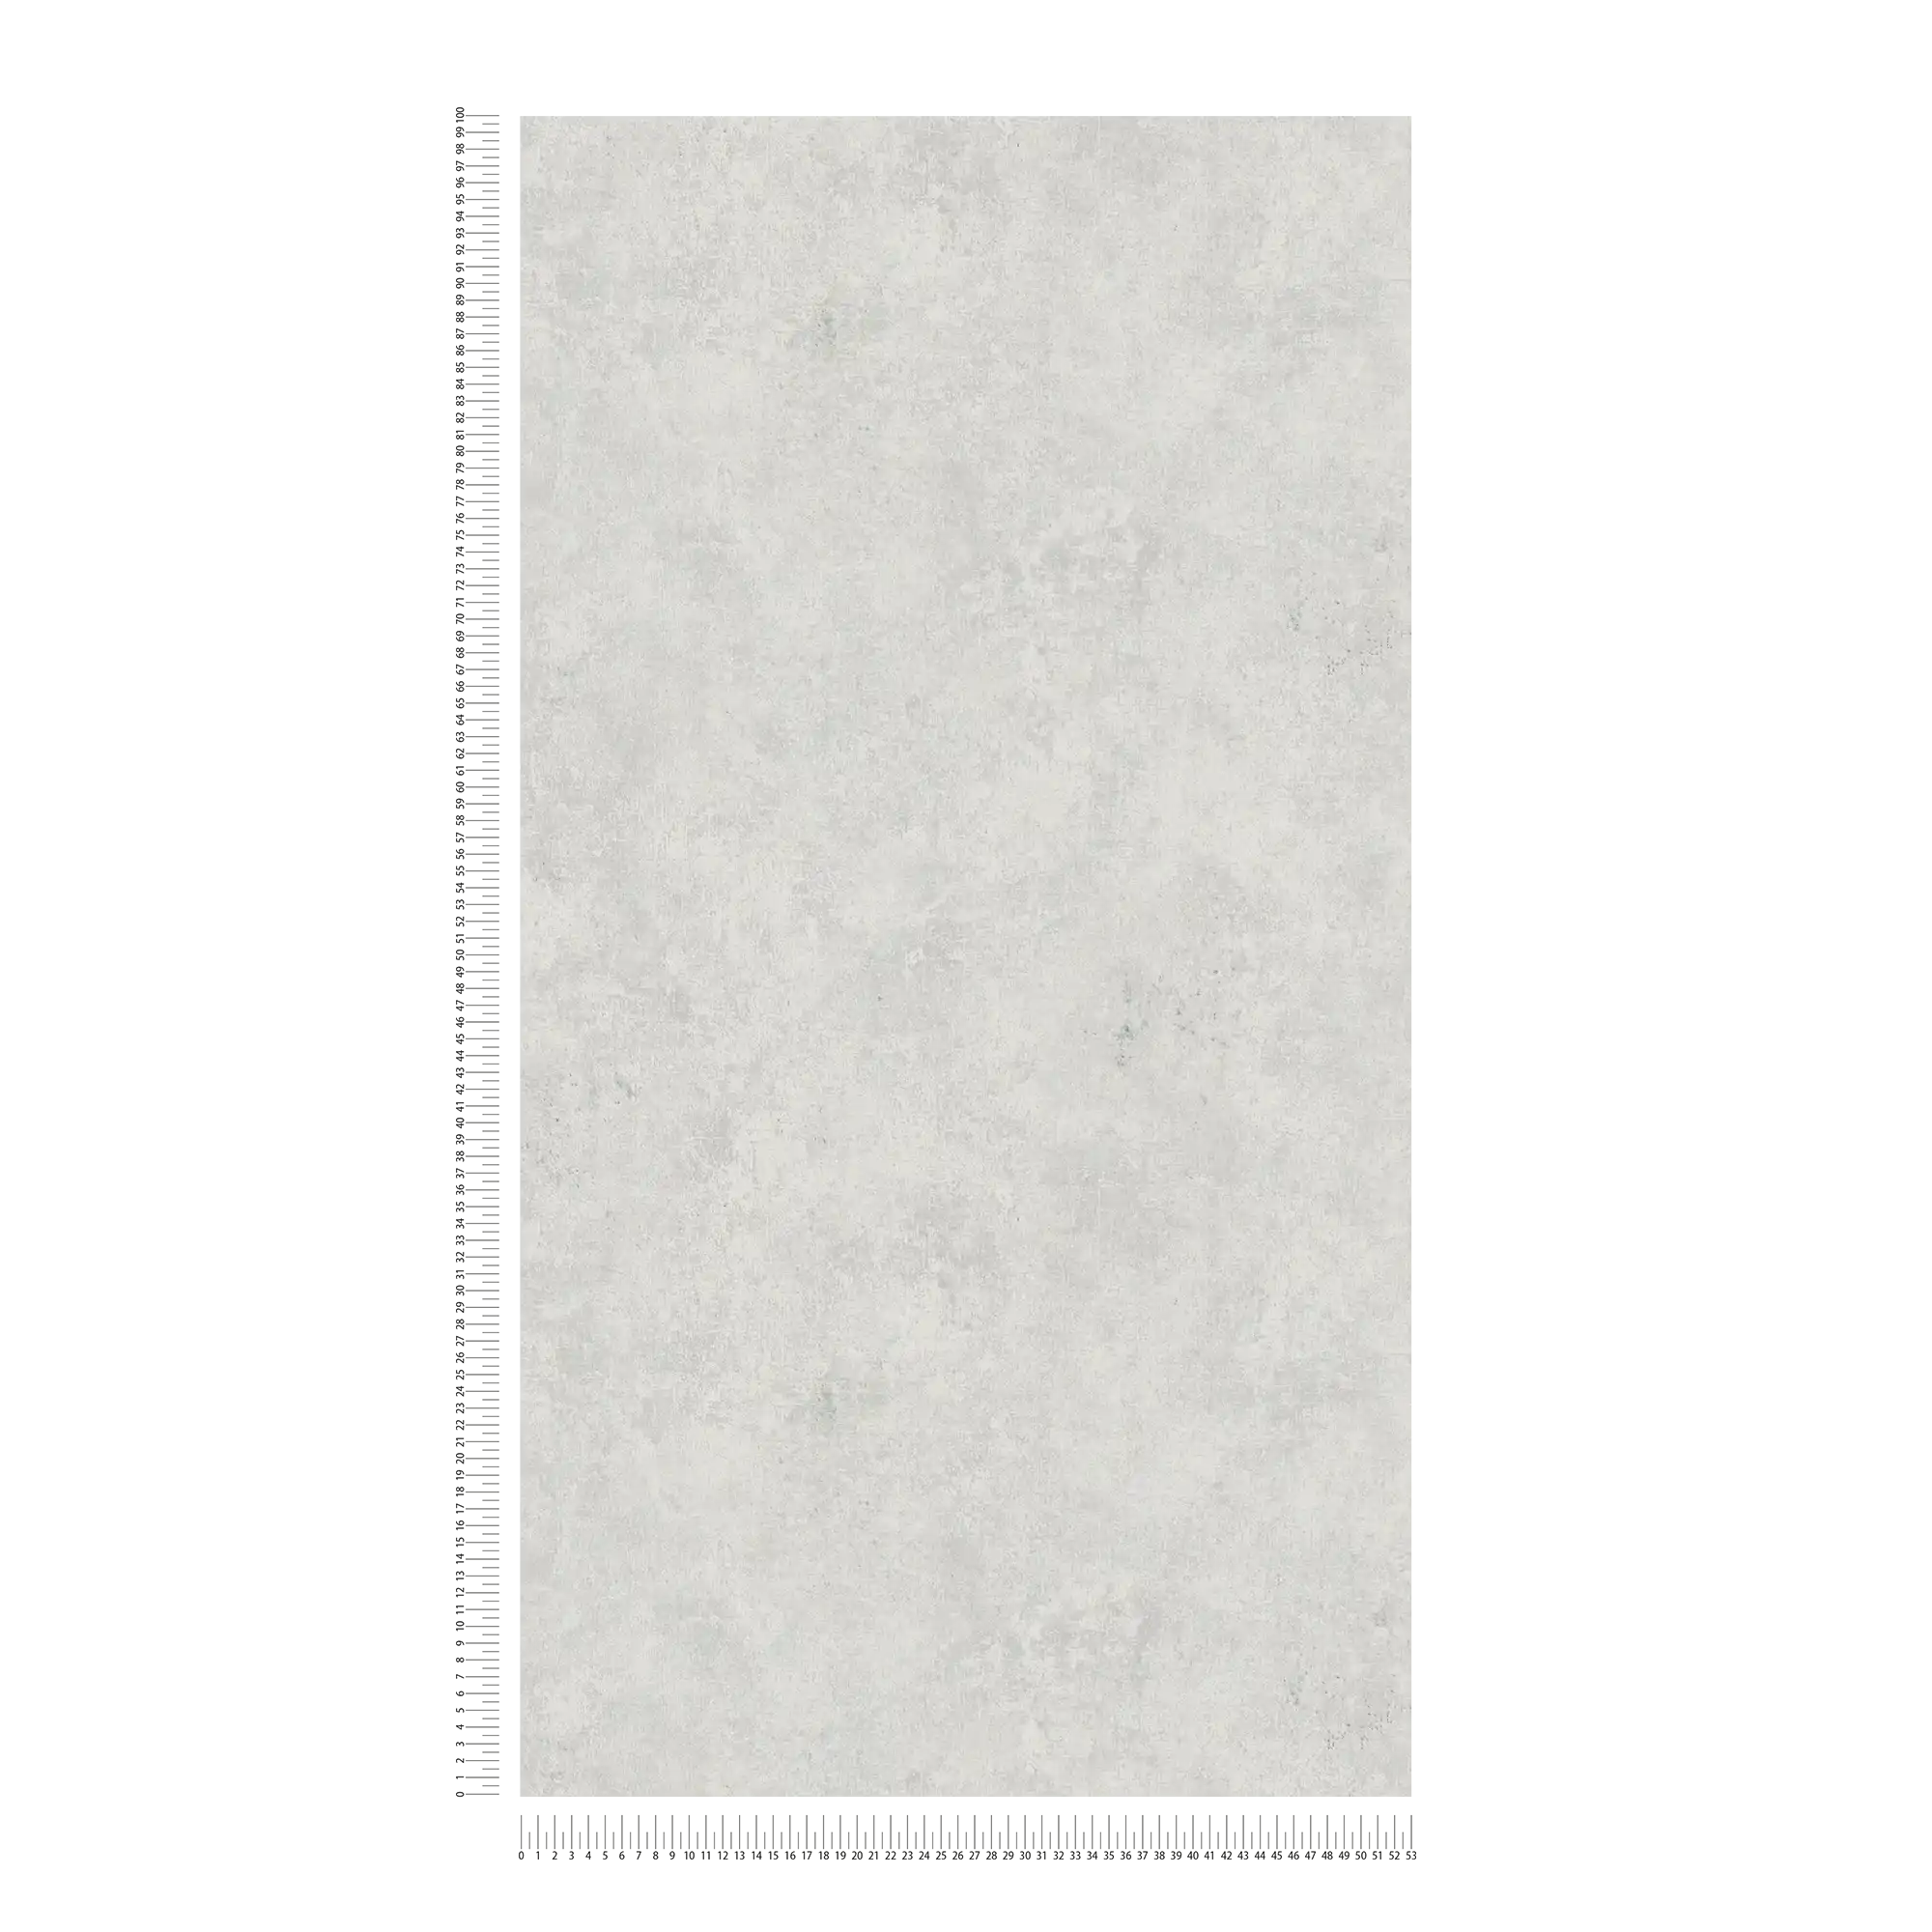             Carta da parati unitaria effetto intonaco, look usato e design retrò - argento
        